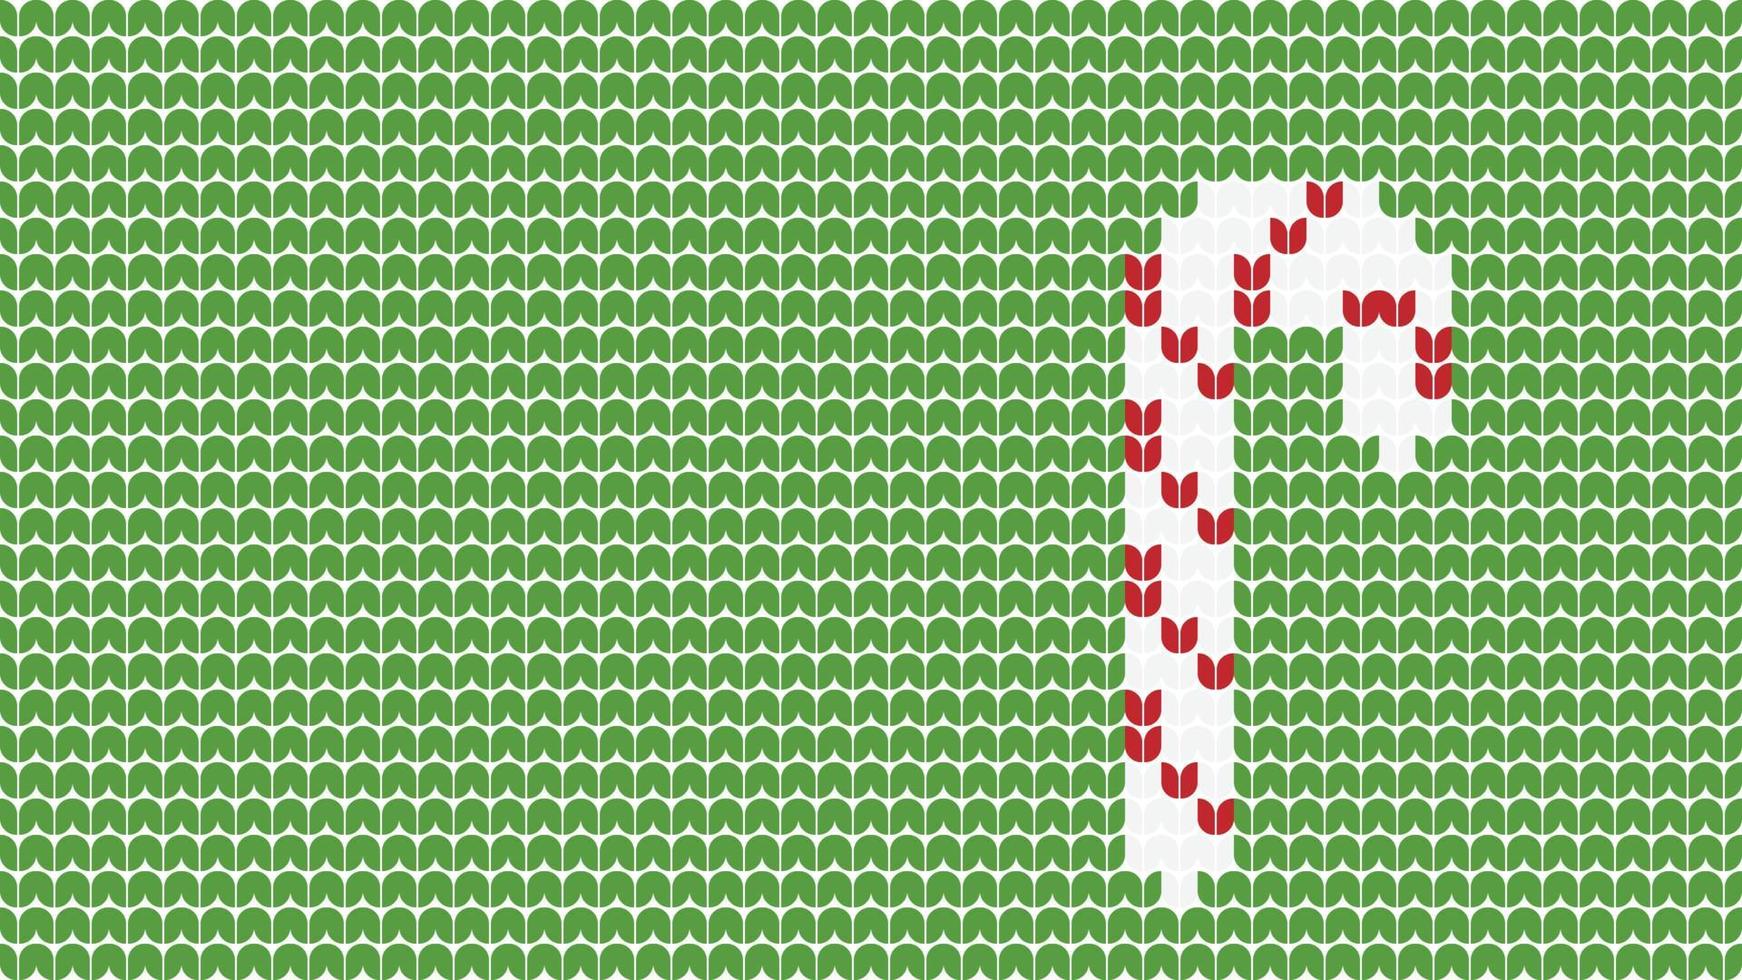 borda de padrão de fundo de equipe de tricô em fundo verde, borda de padrão étnico de tricô feliz natal e feliz inverno cartaz de vetor de dias